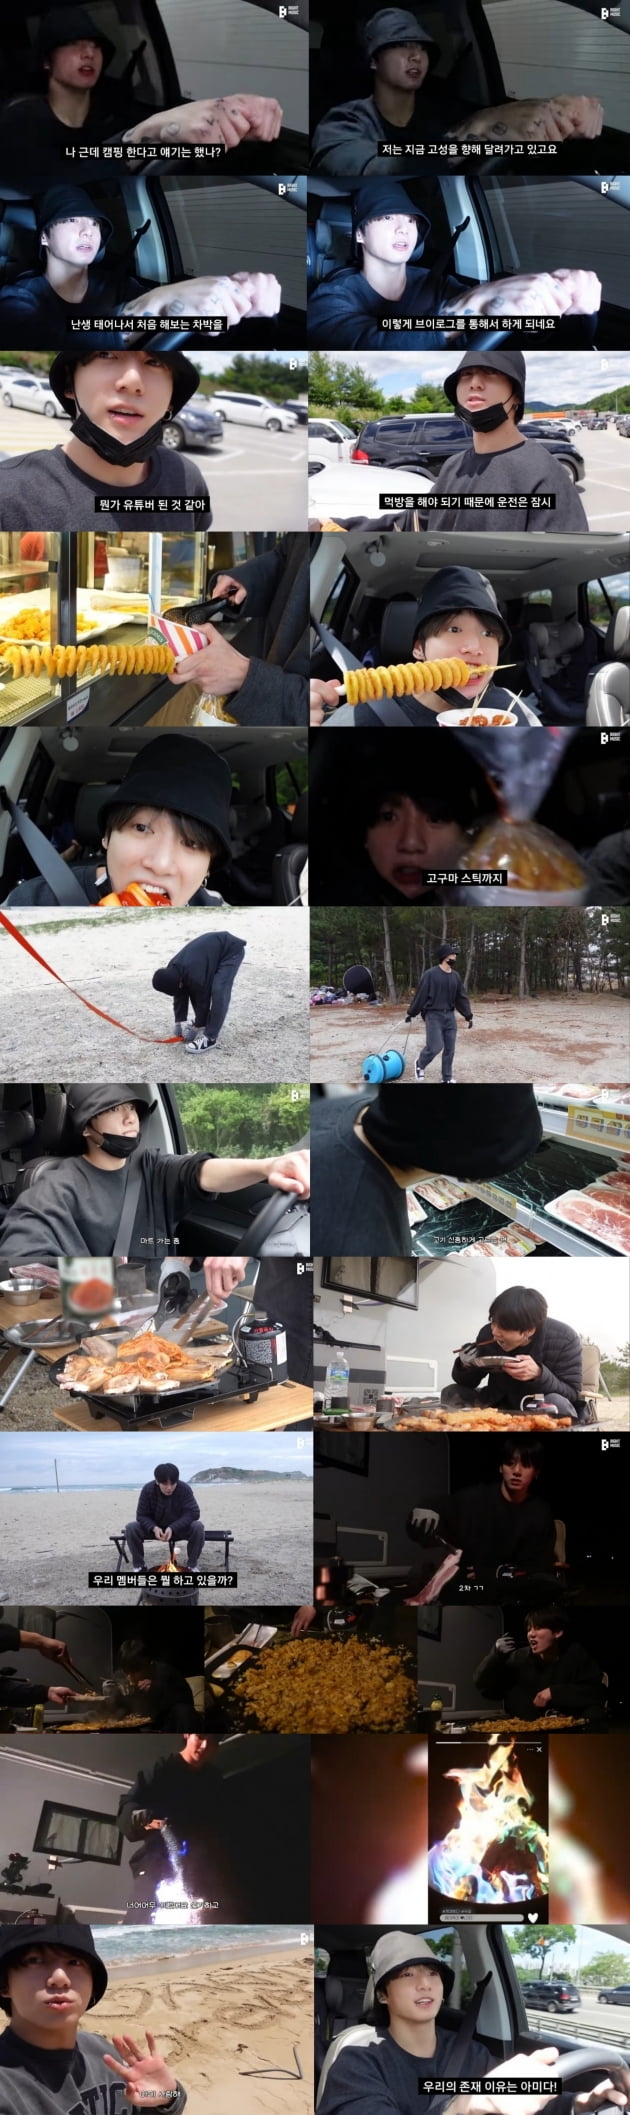 방탄소년단 정국, '캠핑 VLOG' 유튜브서 9일 만에 조회수 1000만 돌파